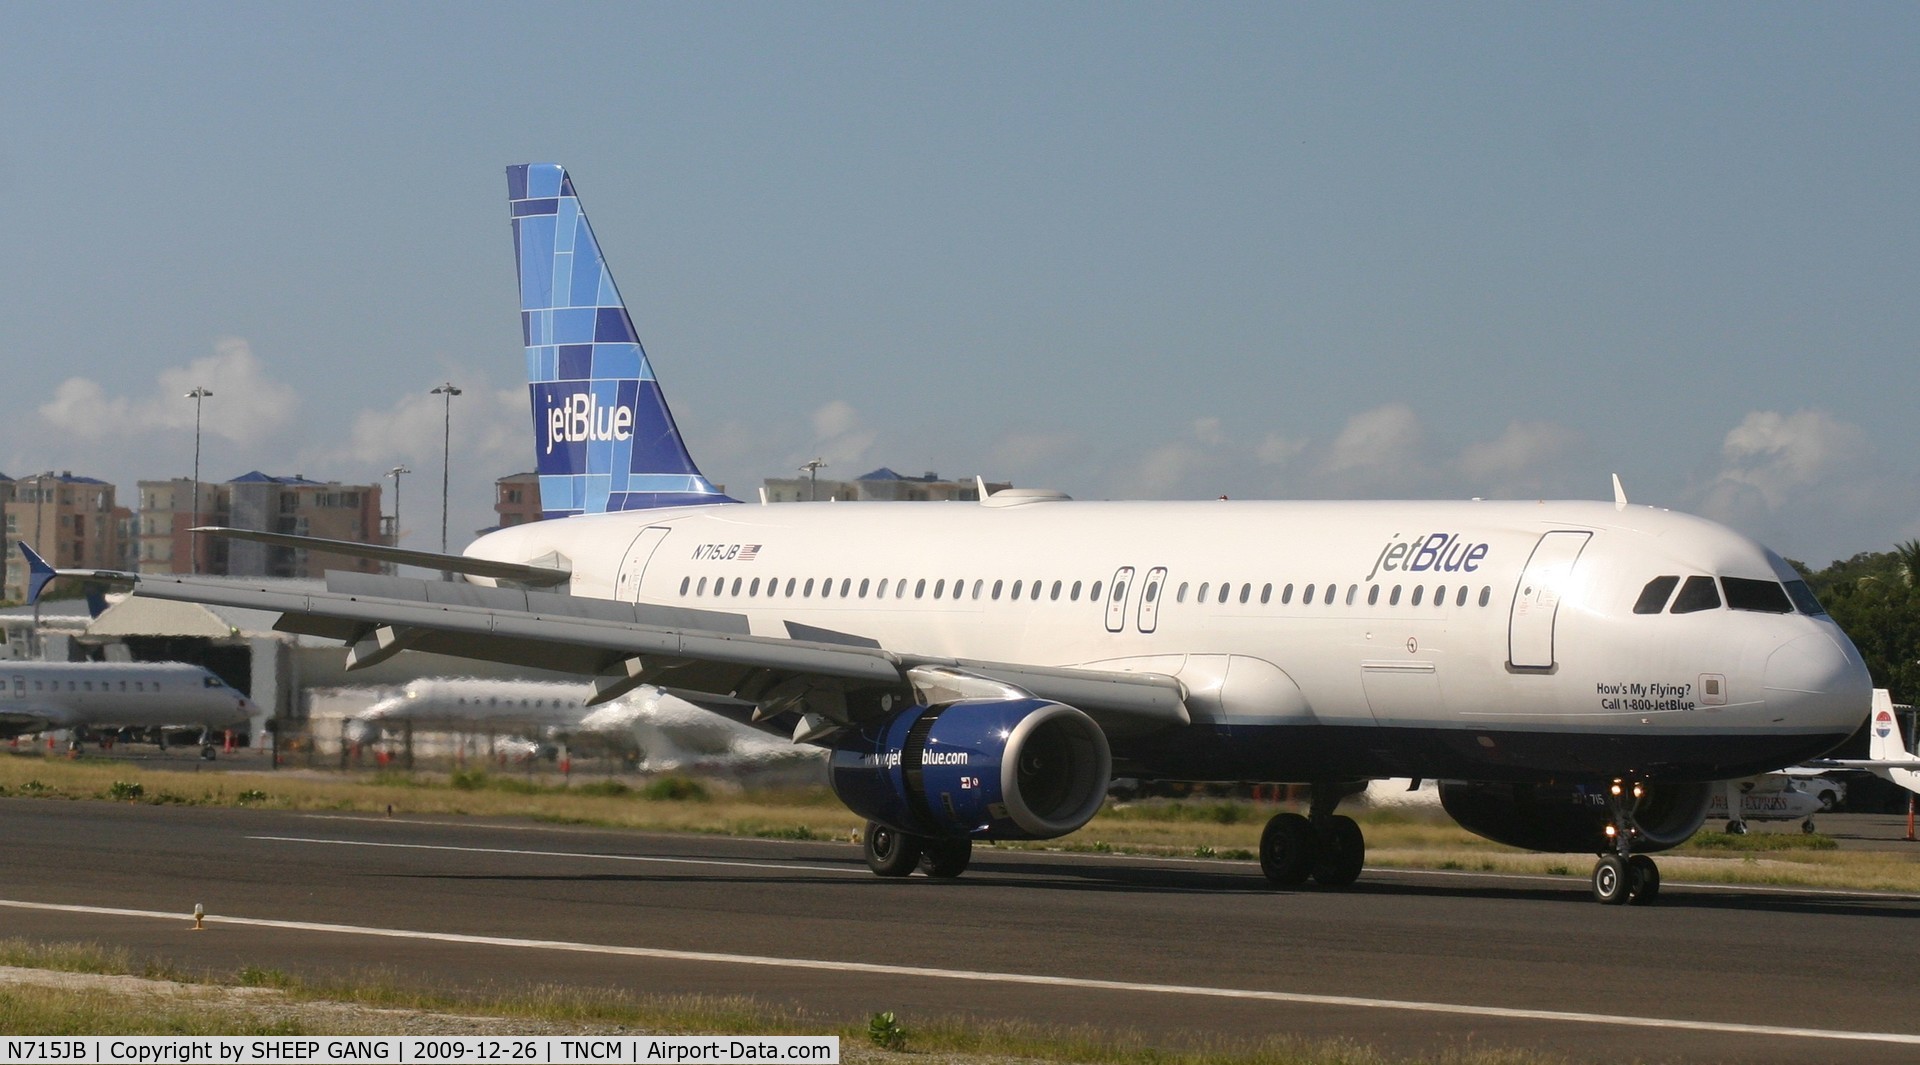 N715JB, 2008 Airbus A320-232 C/N 3554, Jet blue N715JB just landed at TNCM